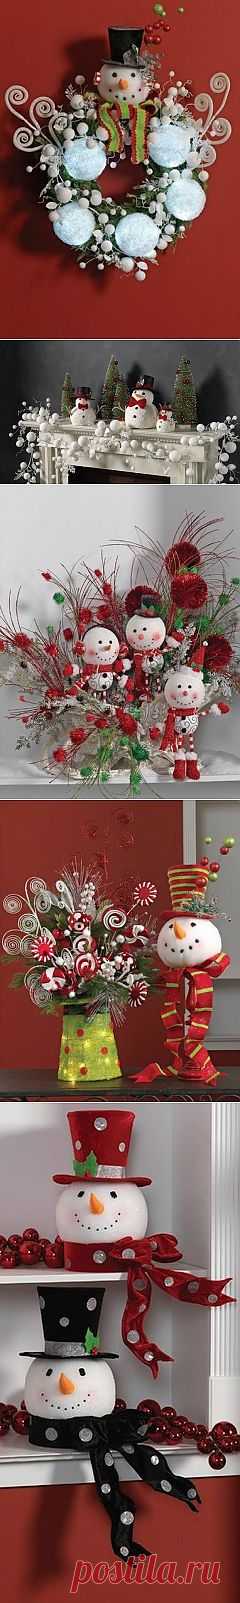 Использование пенопластовых шаров для новогоднего декора